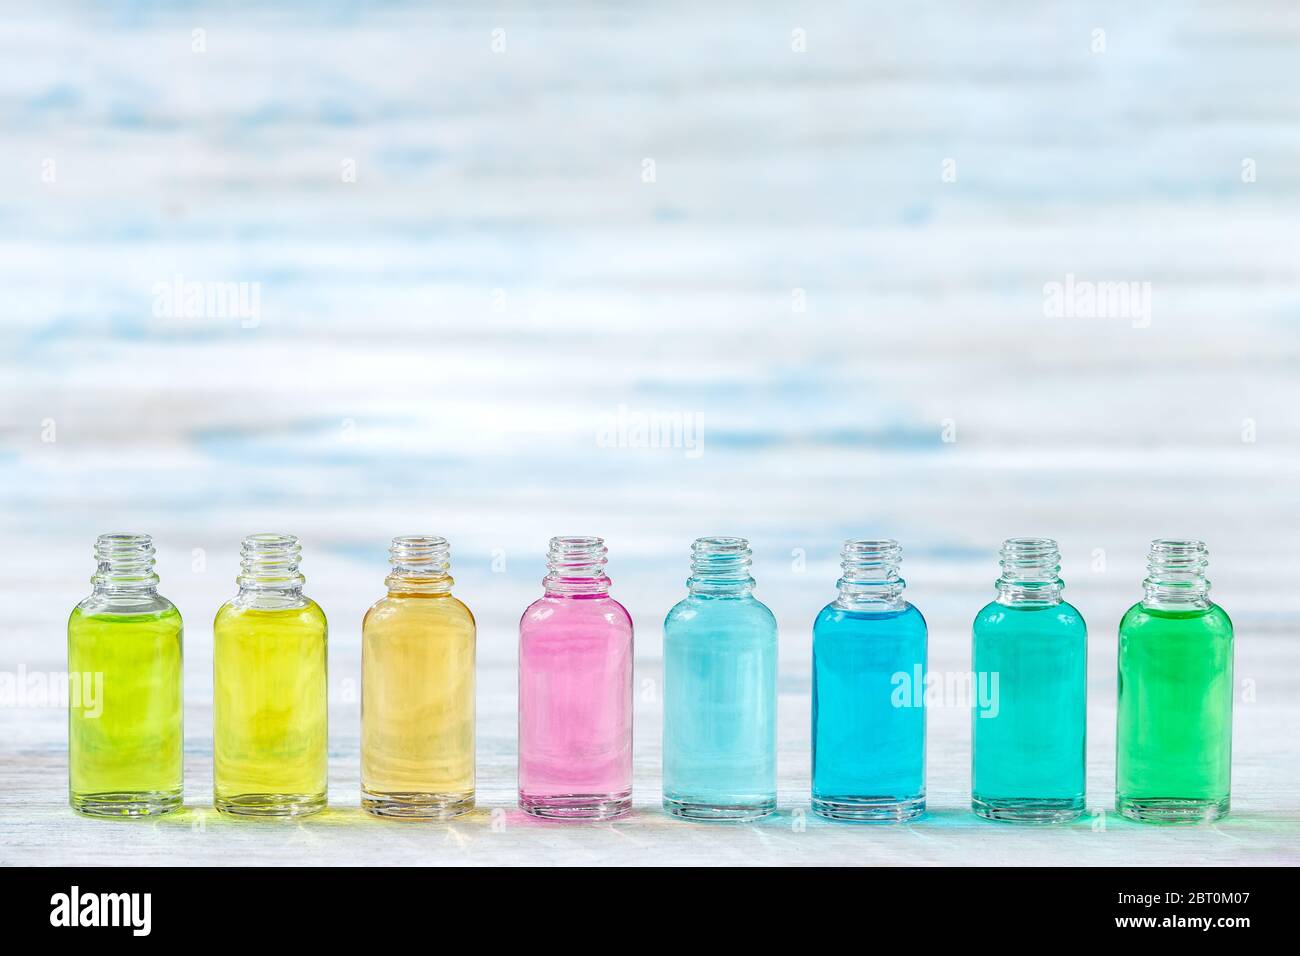 Linie der Kosmetik, Körperpflege, mit ätherischen Ölen für Kräuter- und Aromatherapie. Stockfoto